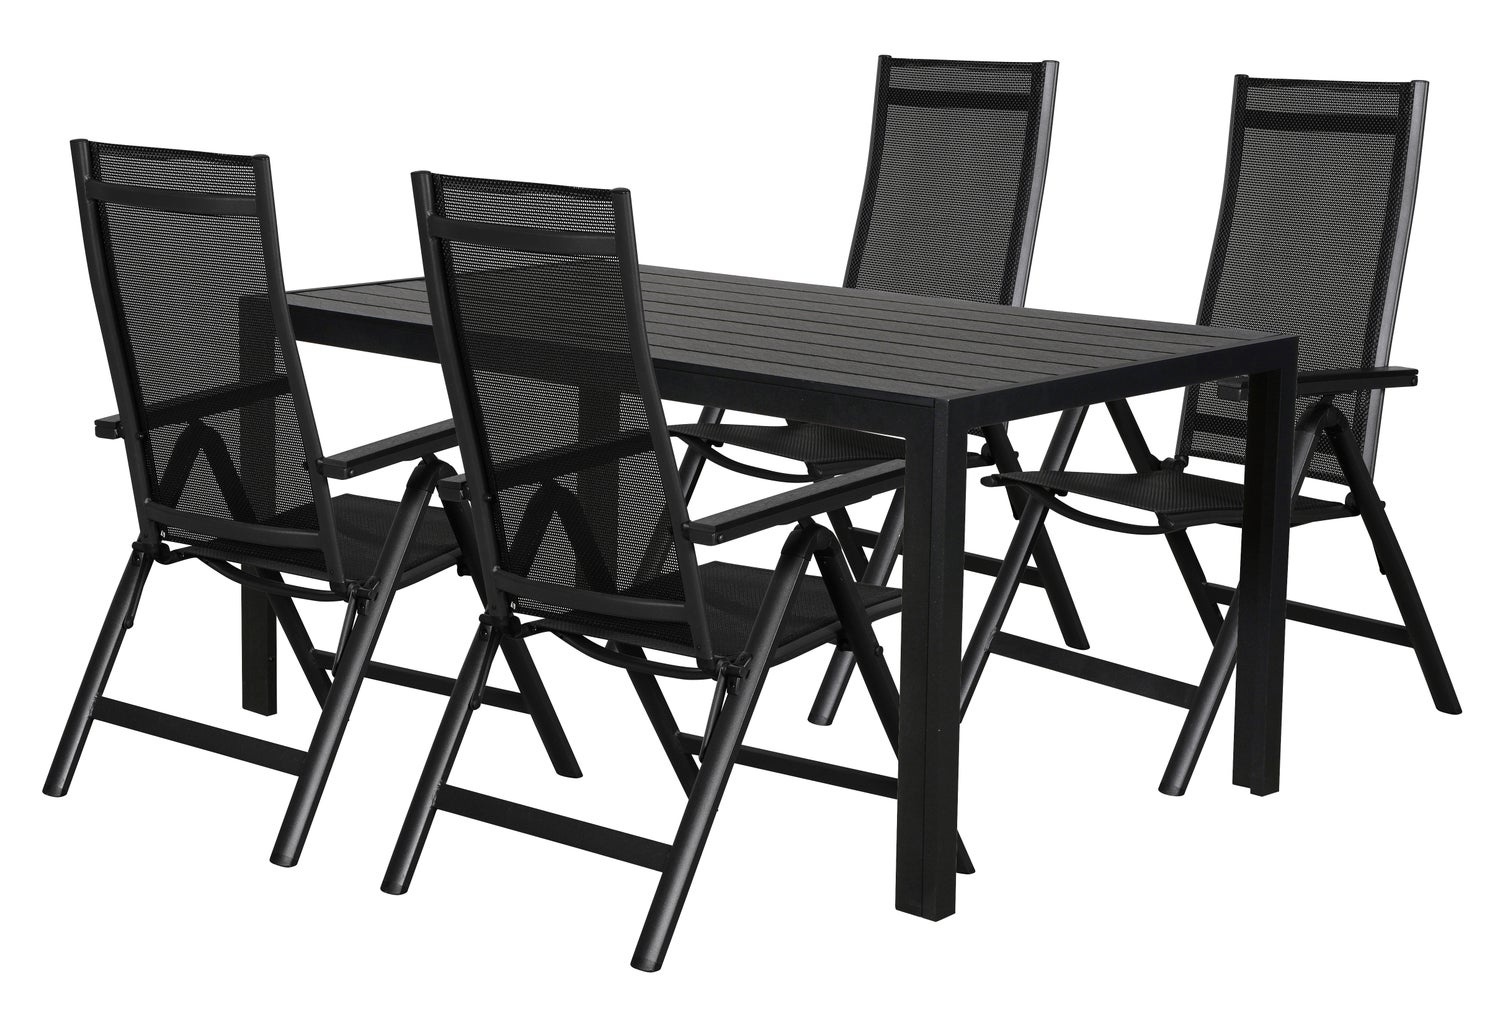 Cult Gartenmöbel Set 1 Tisch und 4 Stühle.